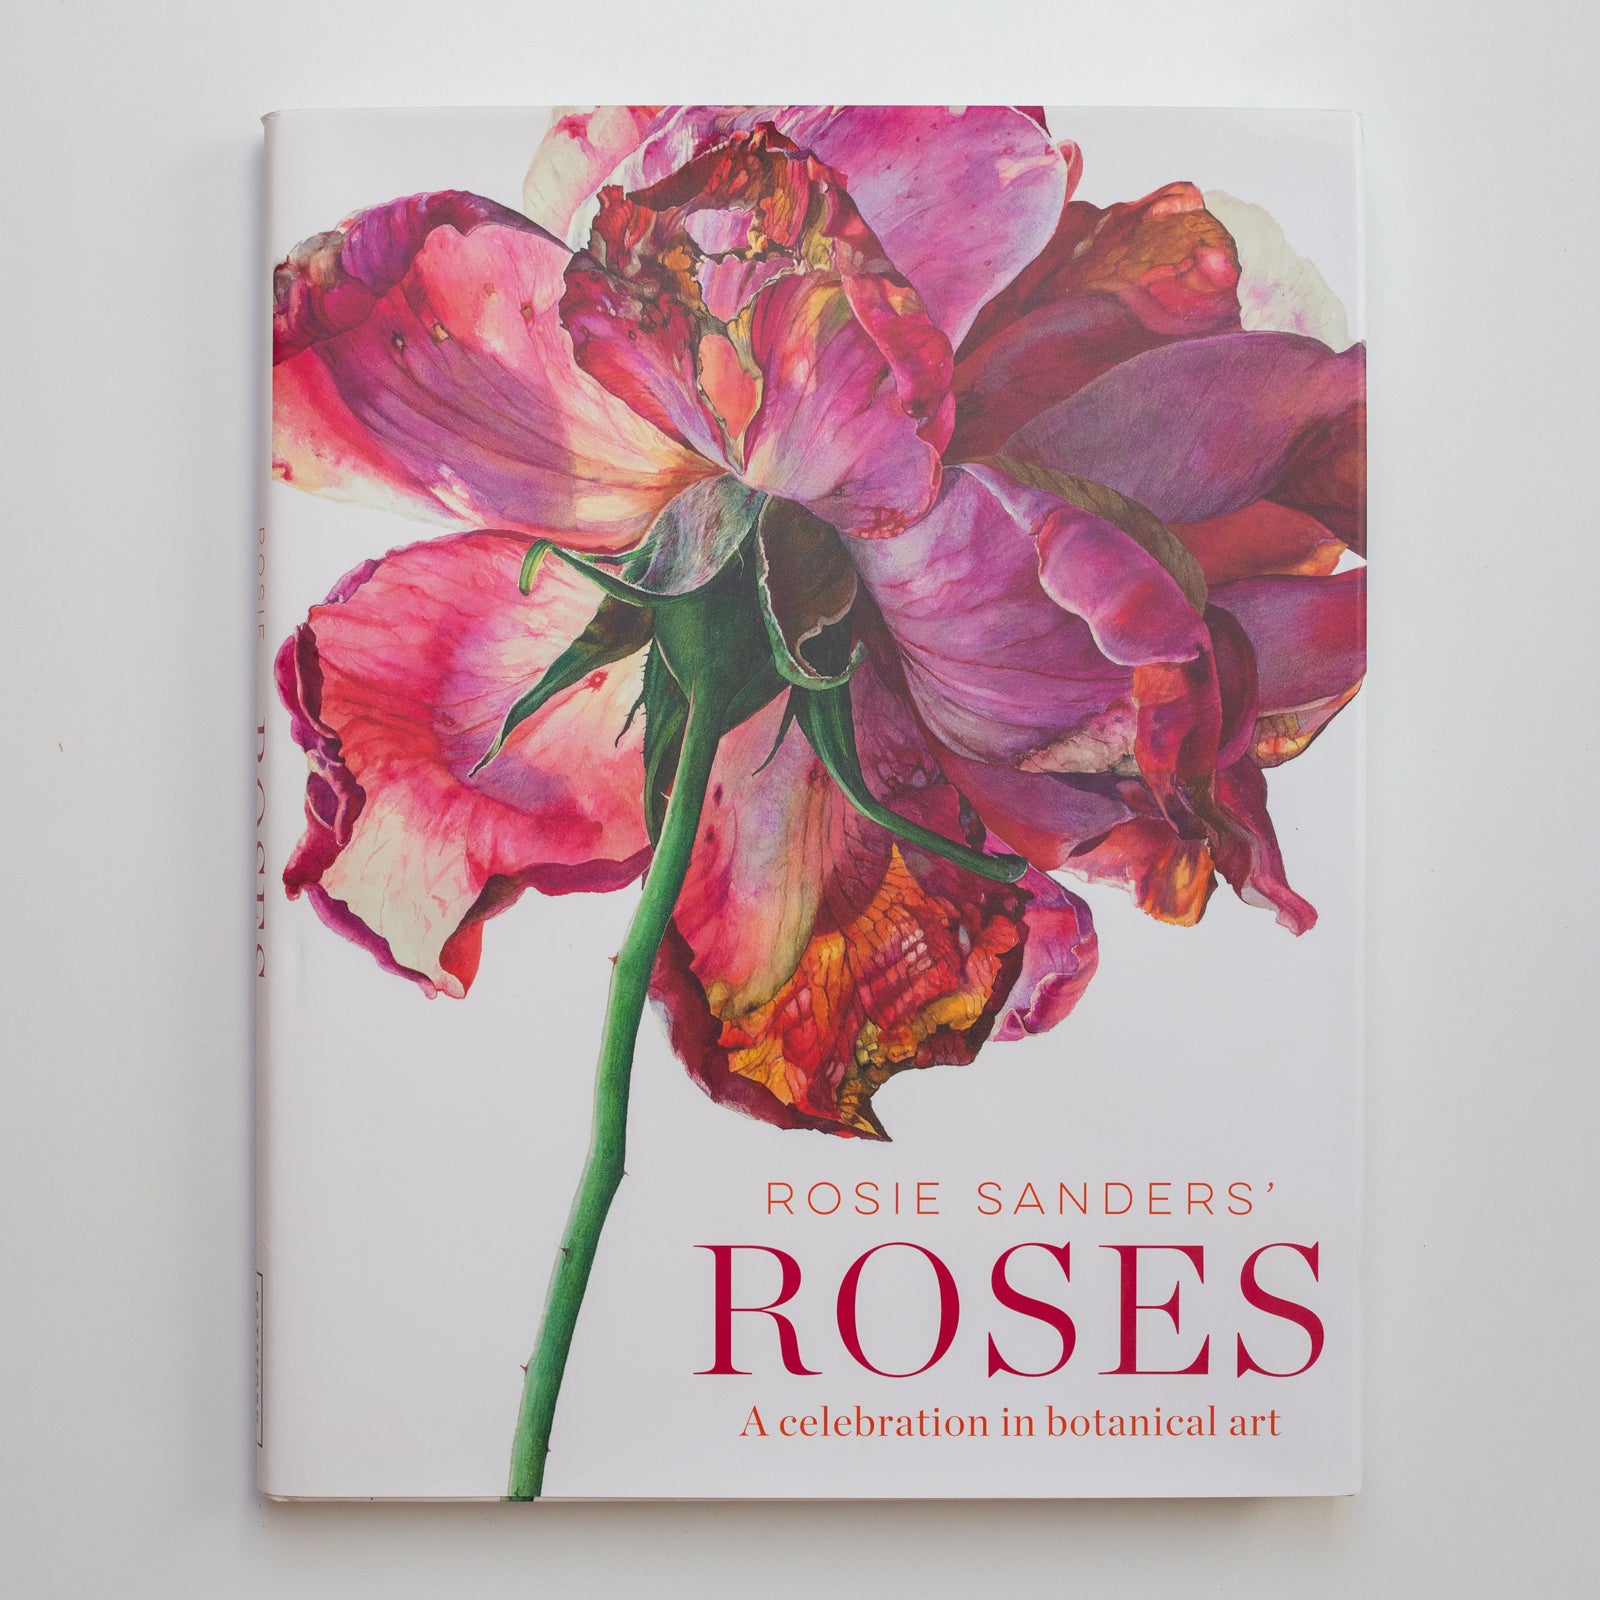 Roses by Rosie Sanders